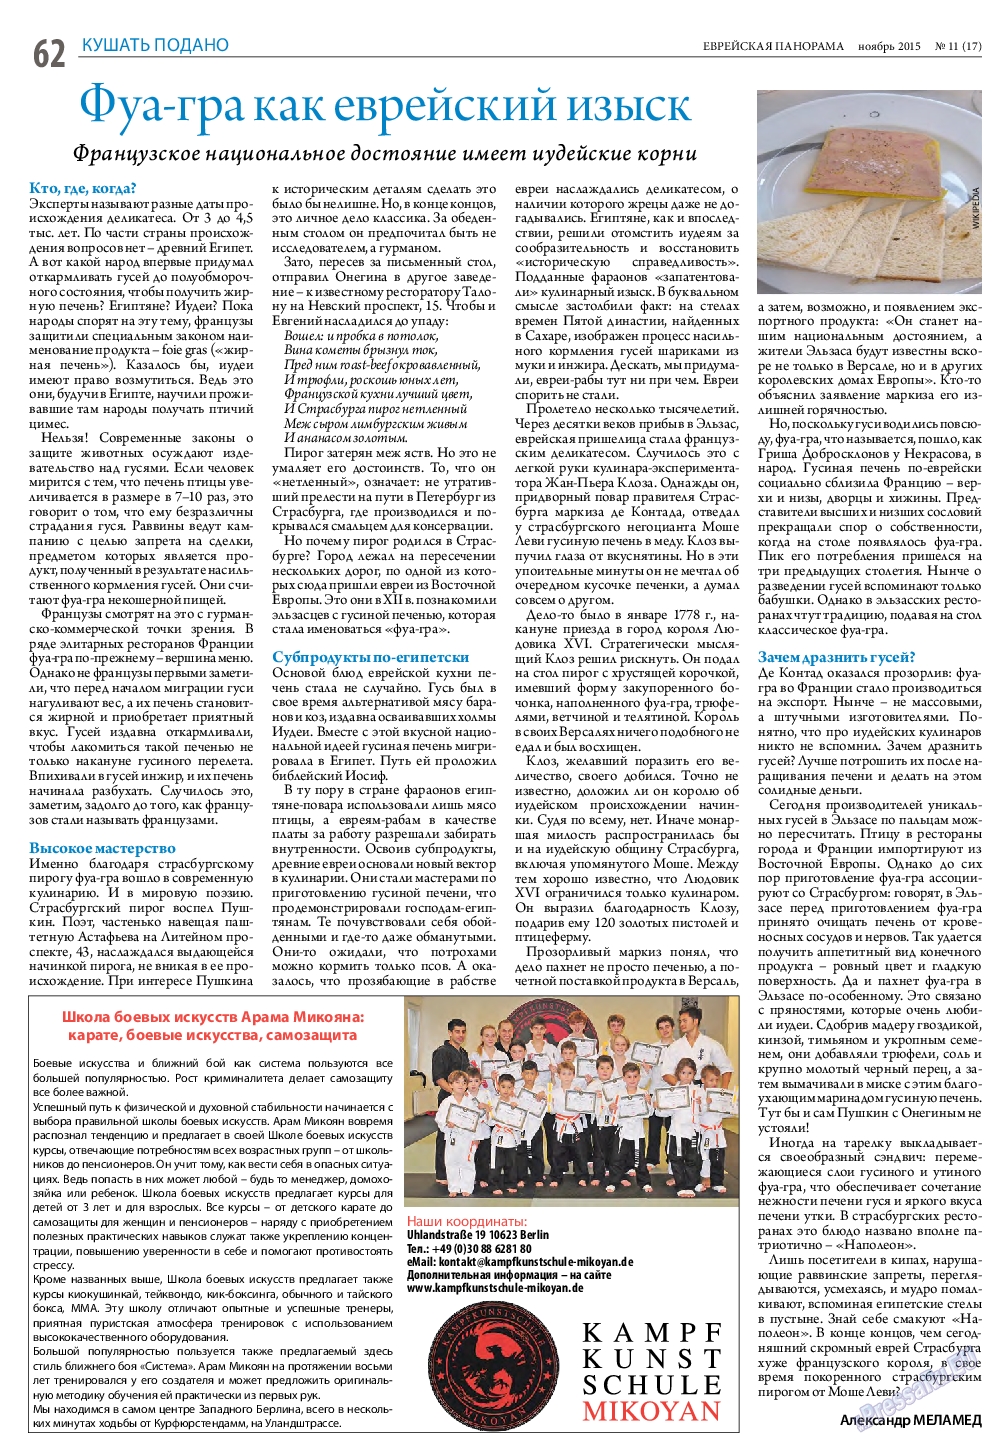 Еврейская панорама (газета). 2015 год, номер 11, стр. 62